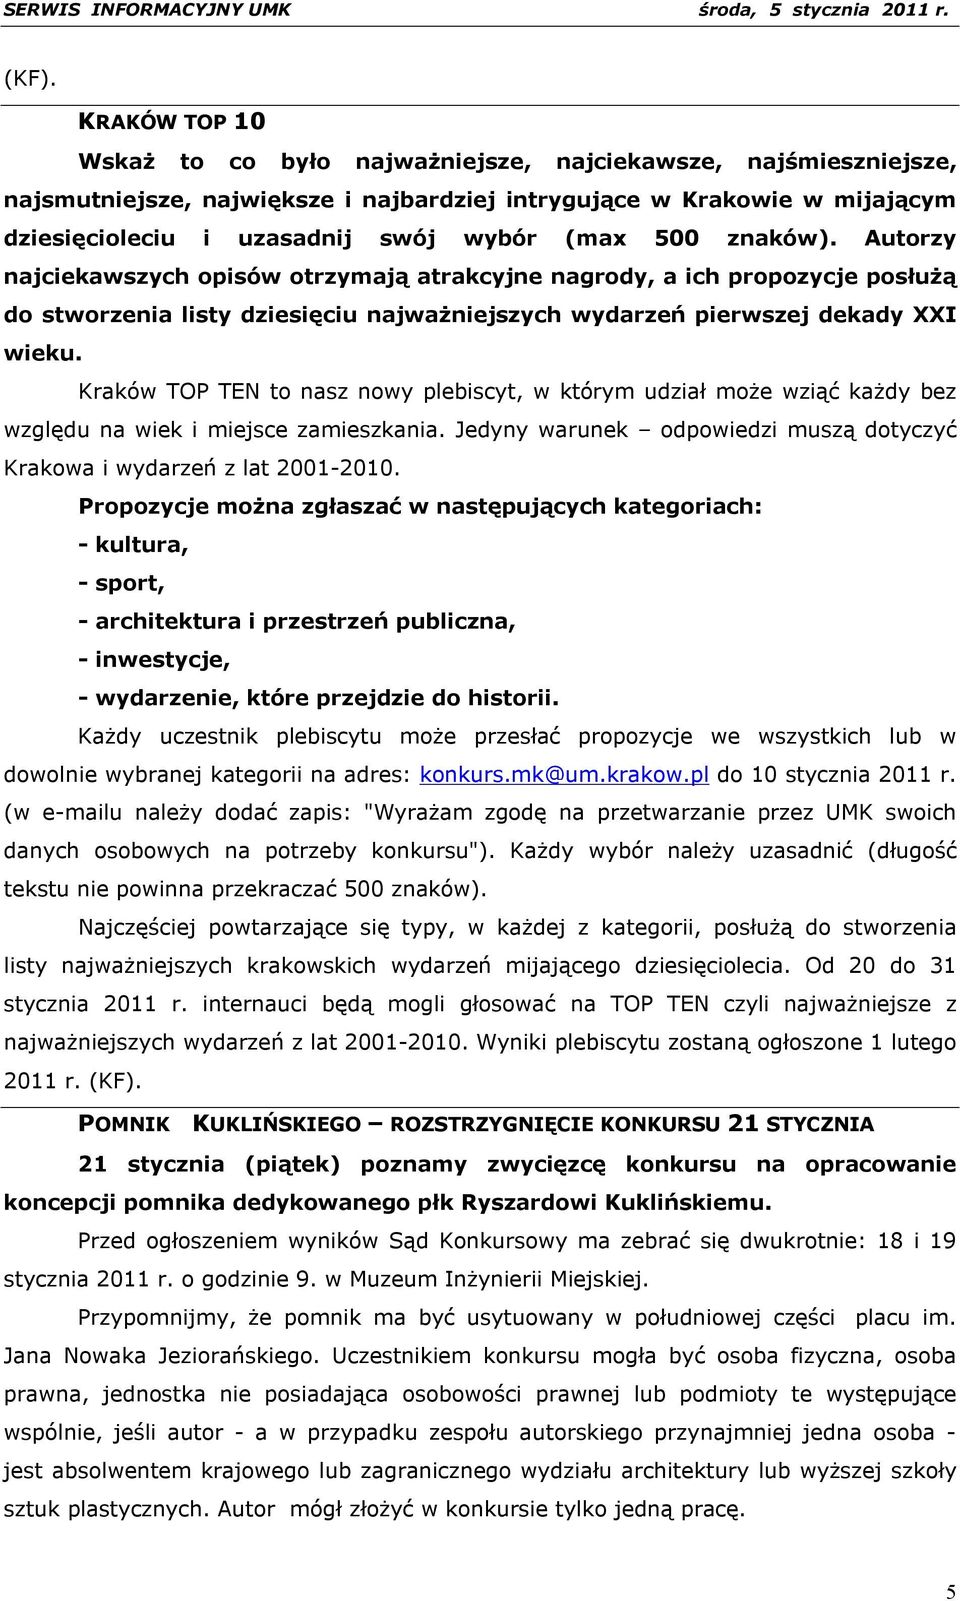 Kraków TOP TEN to nasz nowy plebiscyt, w którym udział może wziąć każdy bez względu na wiek i miejsce zamieszkania. Jedyny warunek odpowiedzi muszą dotyczyć Krakowa i wydarzeń z lat 2001-2010.